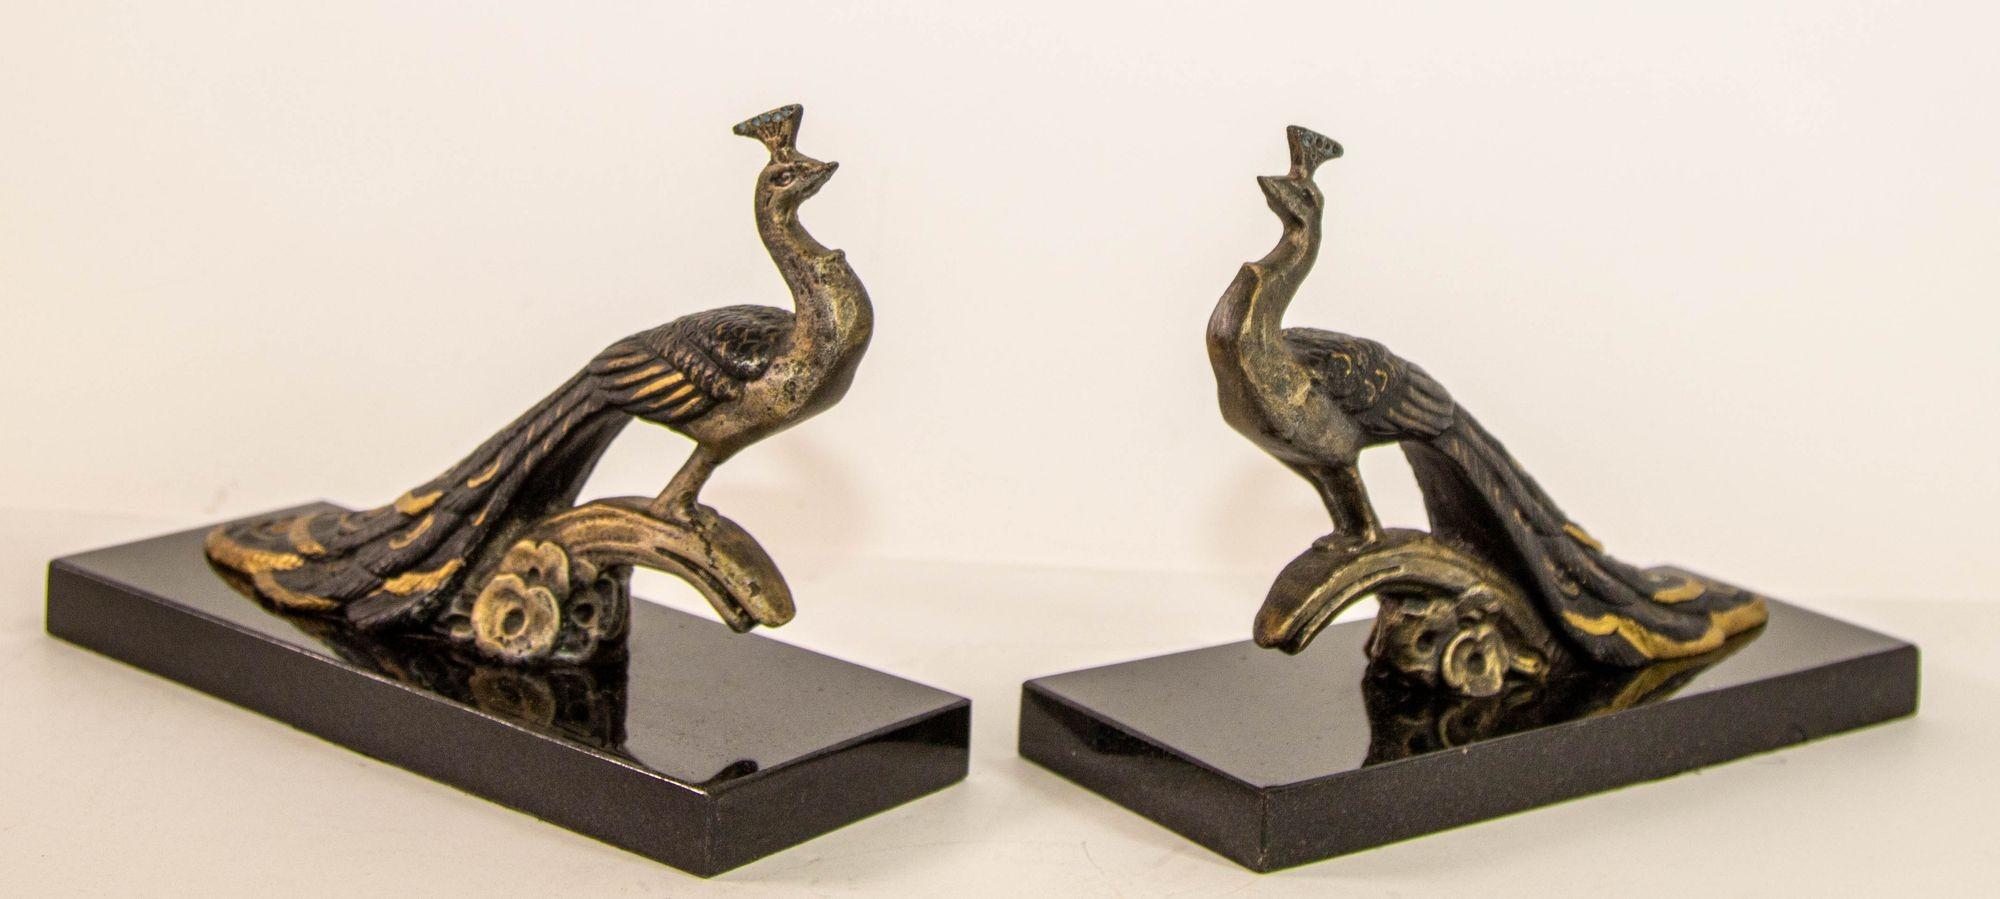 Französisch Art Deco Stil Pair Bronze Pfau Buchstützen auf Marmorsockel.
Hollywood-Regency-Paar aus vergoldeter Bronze auf schwarzem Marmorsockel mit Pfau als Buchstütze.
Sehr dekorativer Pfau aus Messing, der auf einem Ast steht.
Dies ist ein